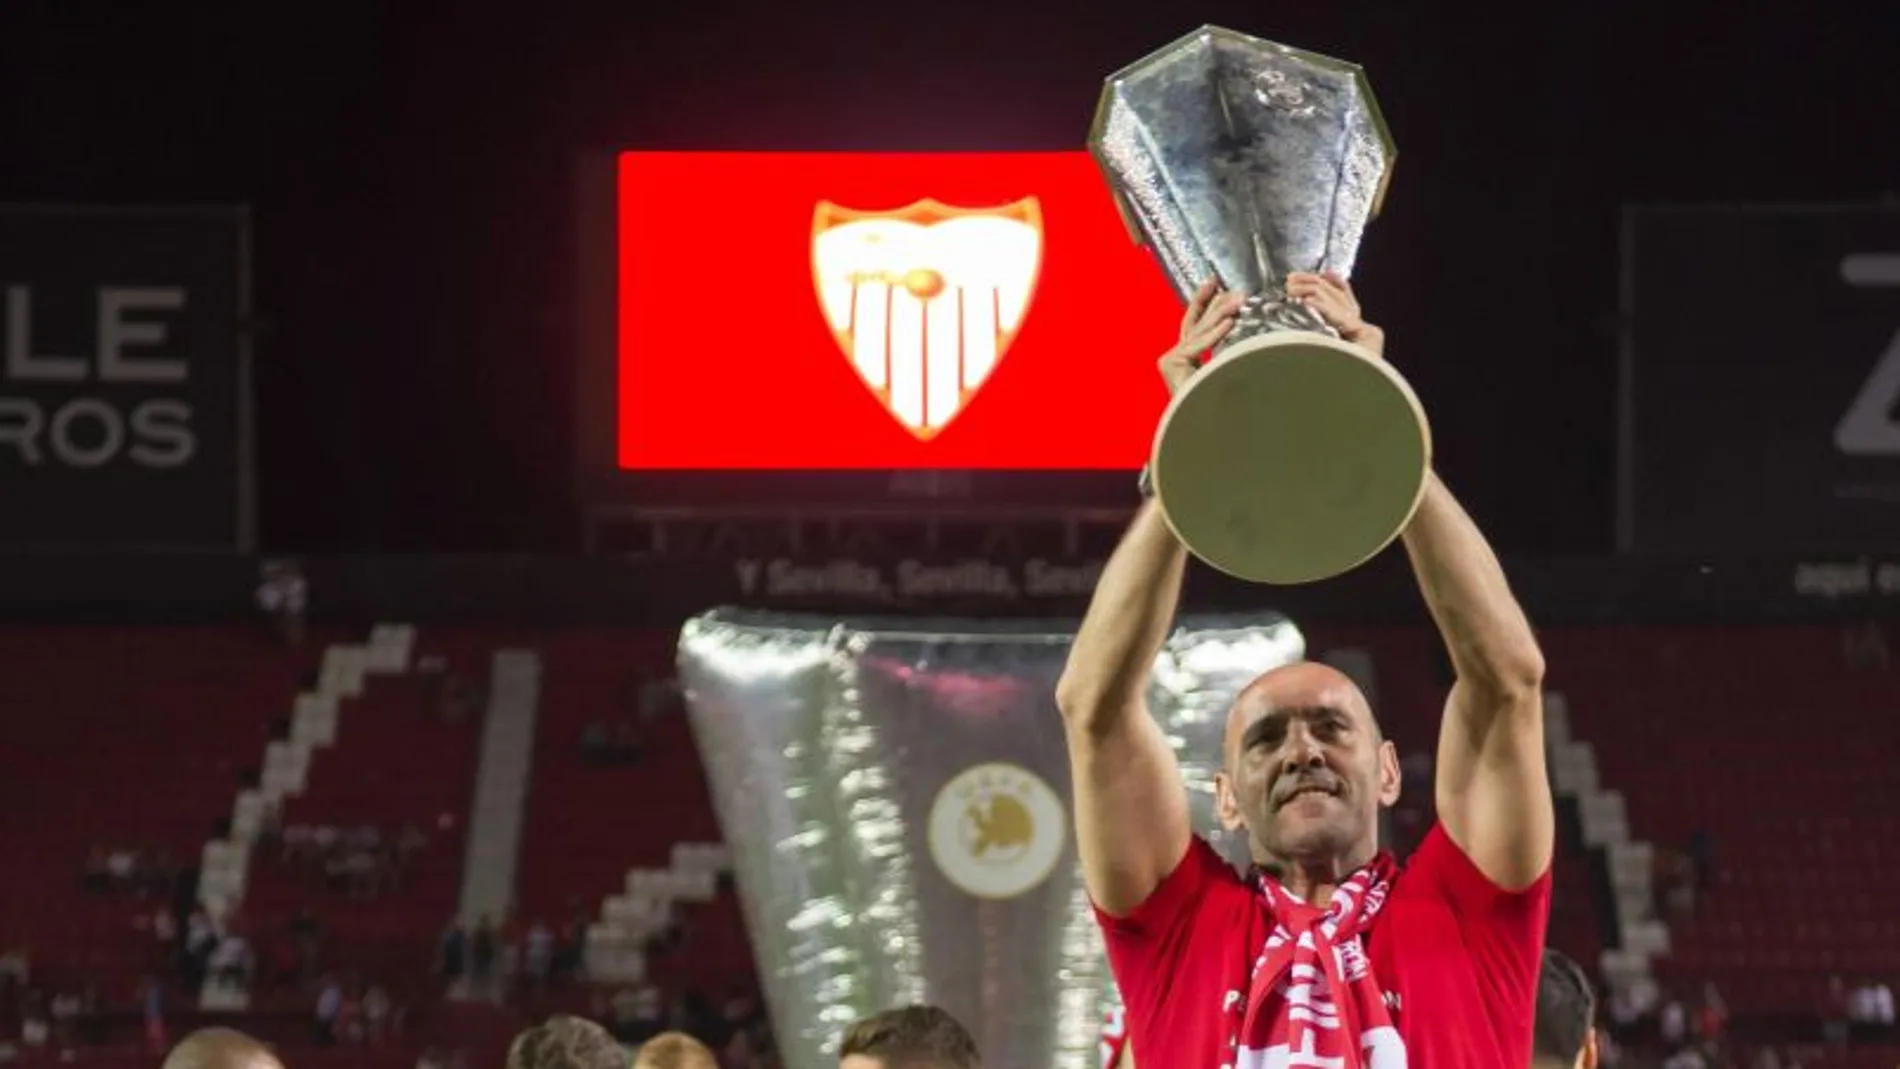 El director deportivo del Sevilla FC Ramón Rodríguez "Monchi"festeja con la afición la quinta Liga Europa del equipo sevillista, conseguida el pasado miércoles 23 en Basilea (Suiza)